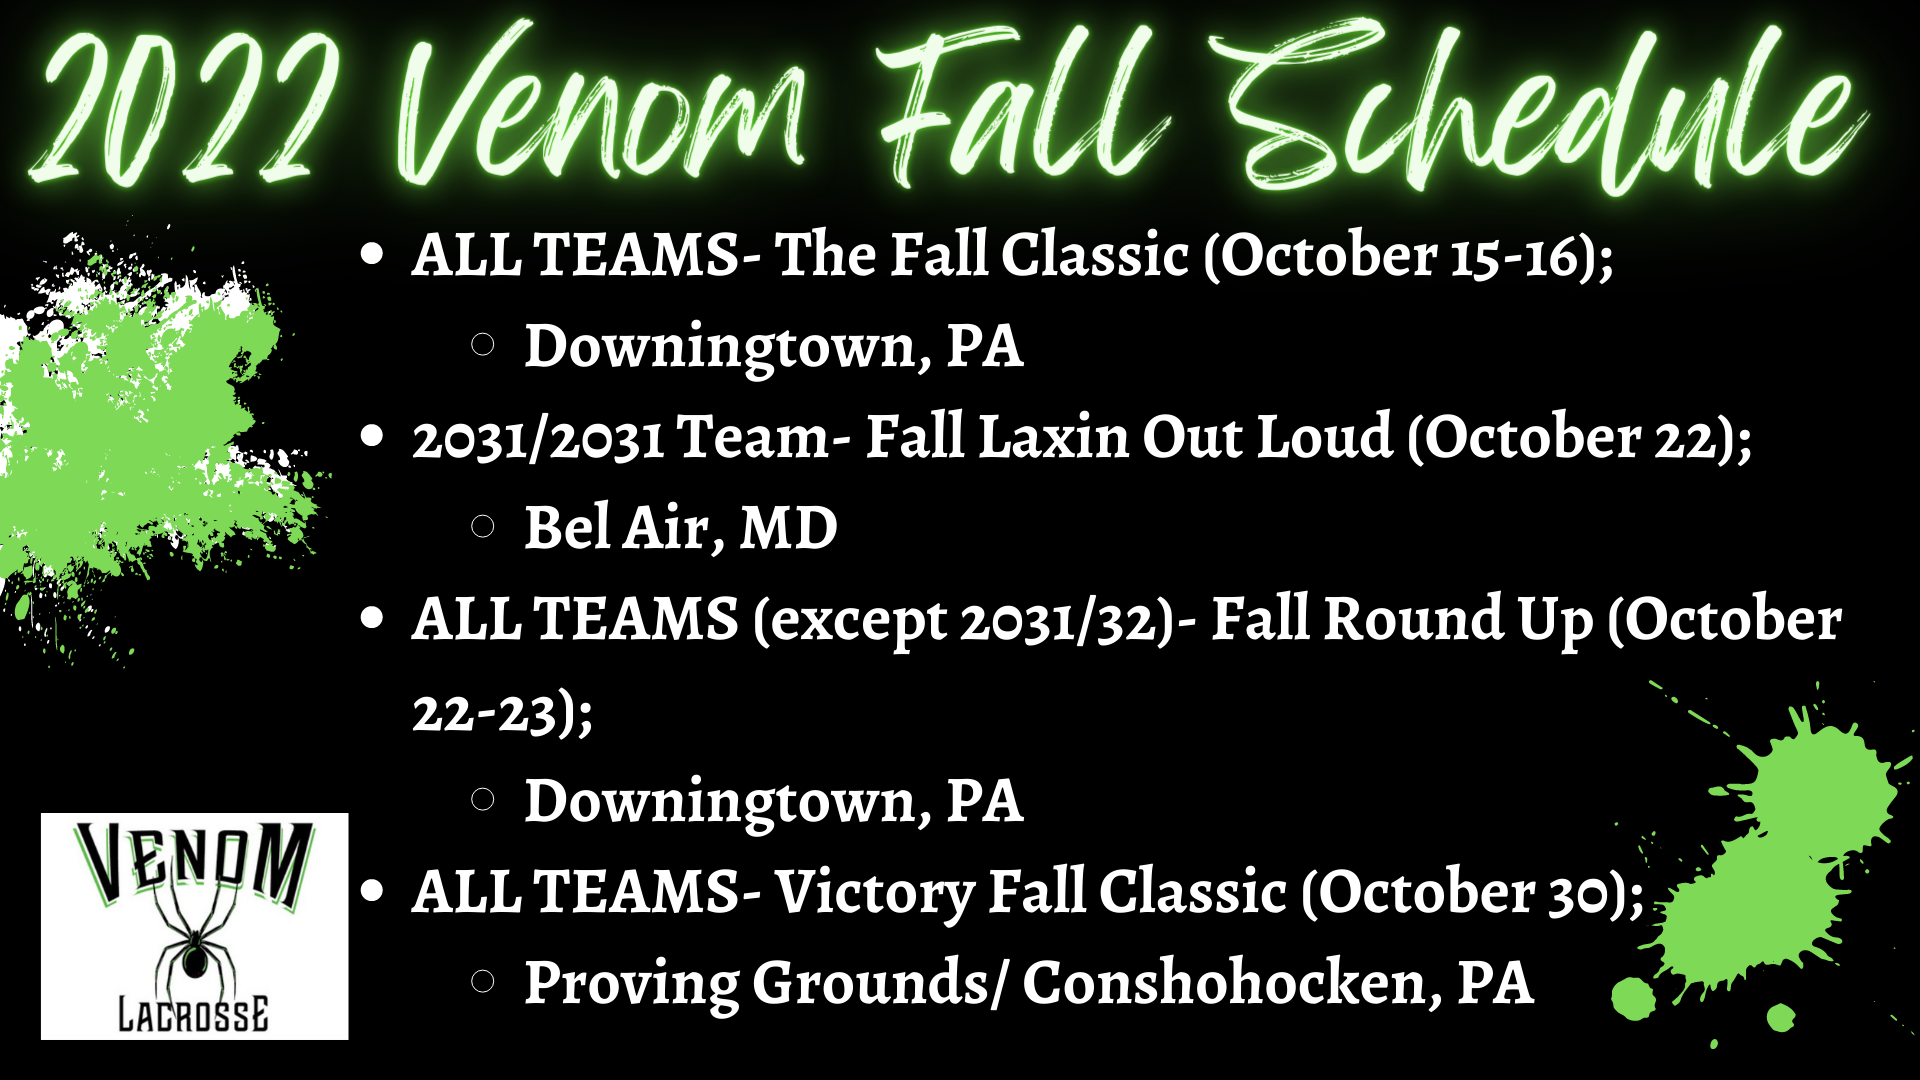 2022 Venom Fall Schedule